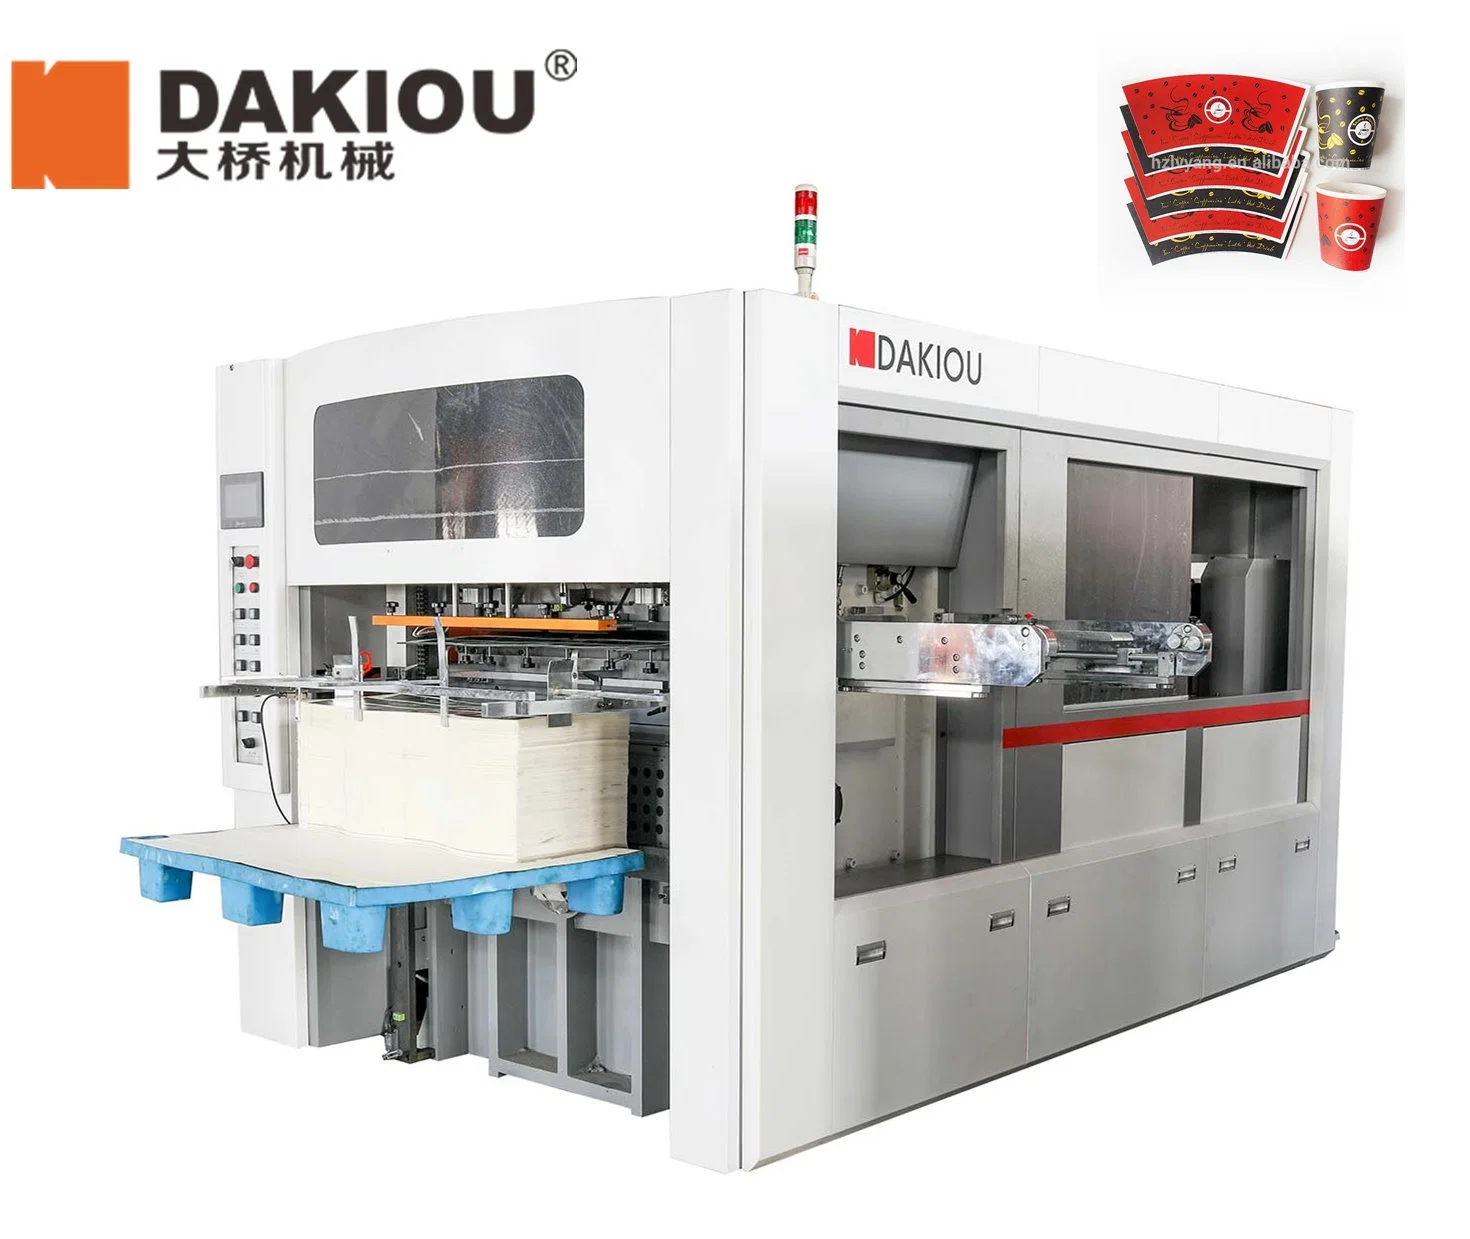 آلة داكيو لقطع الورق عالية السرعة للأكواب والكؤوس